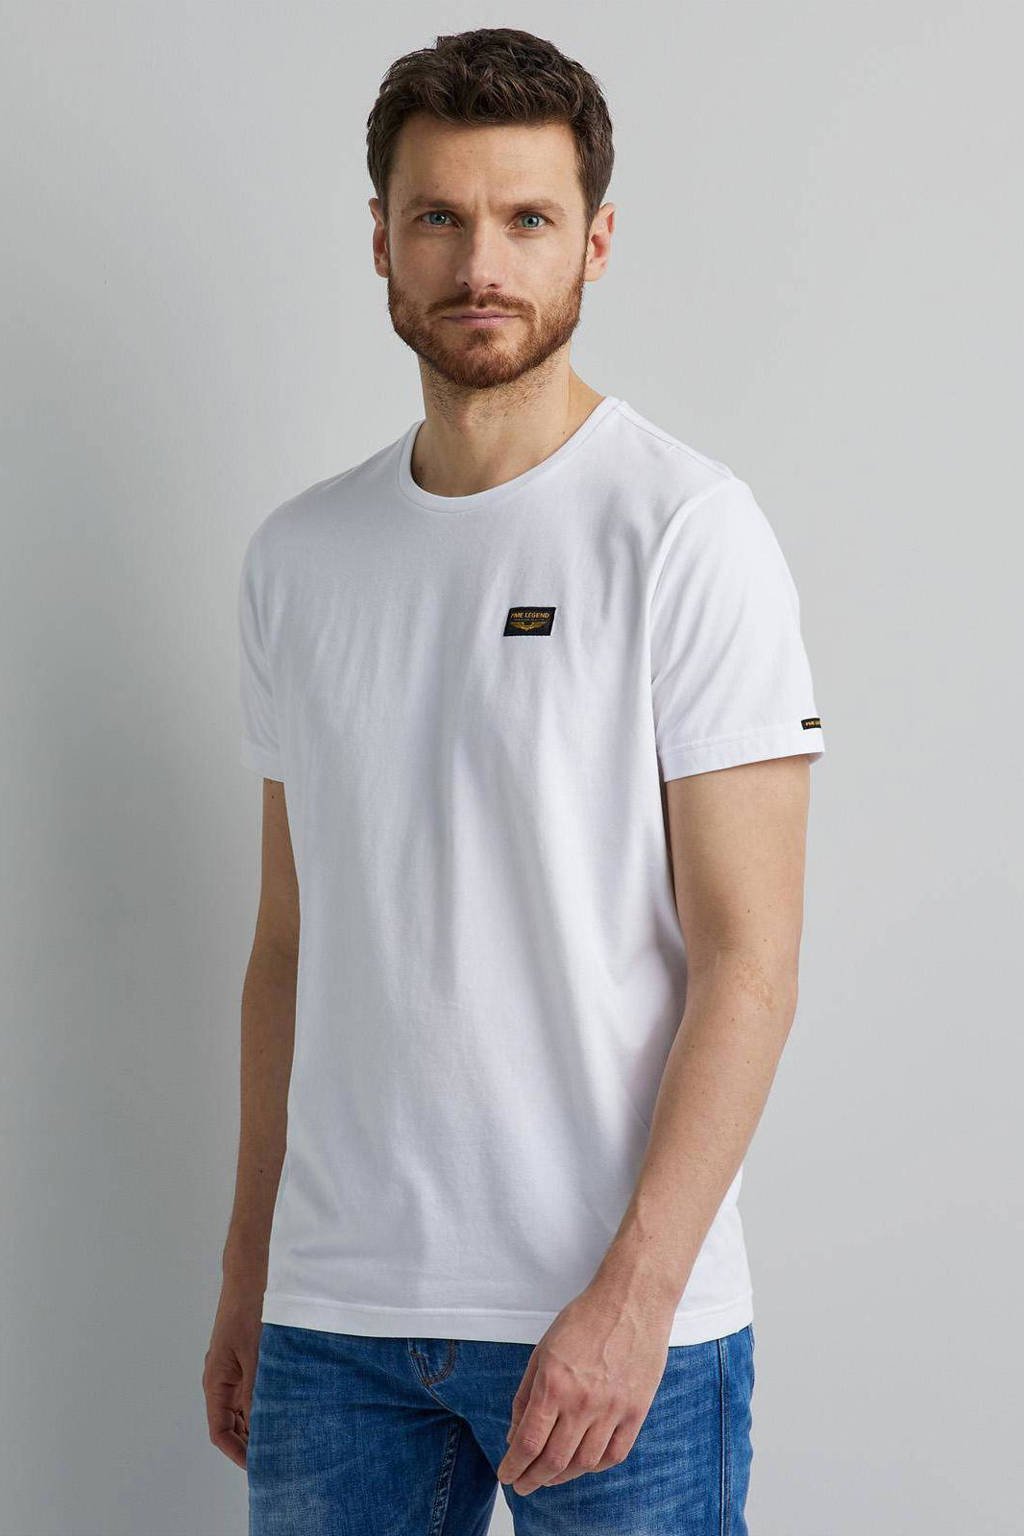 evalueren verlangen kubus PME Legend basic T-shirt 7003 bright white | wehkamp